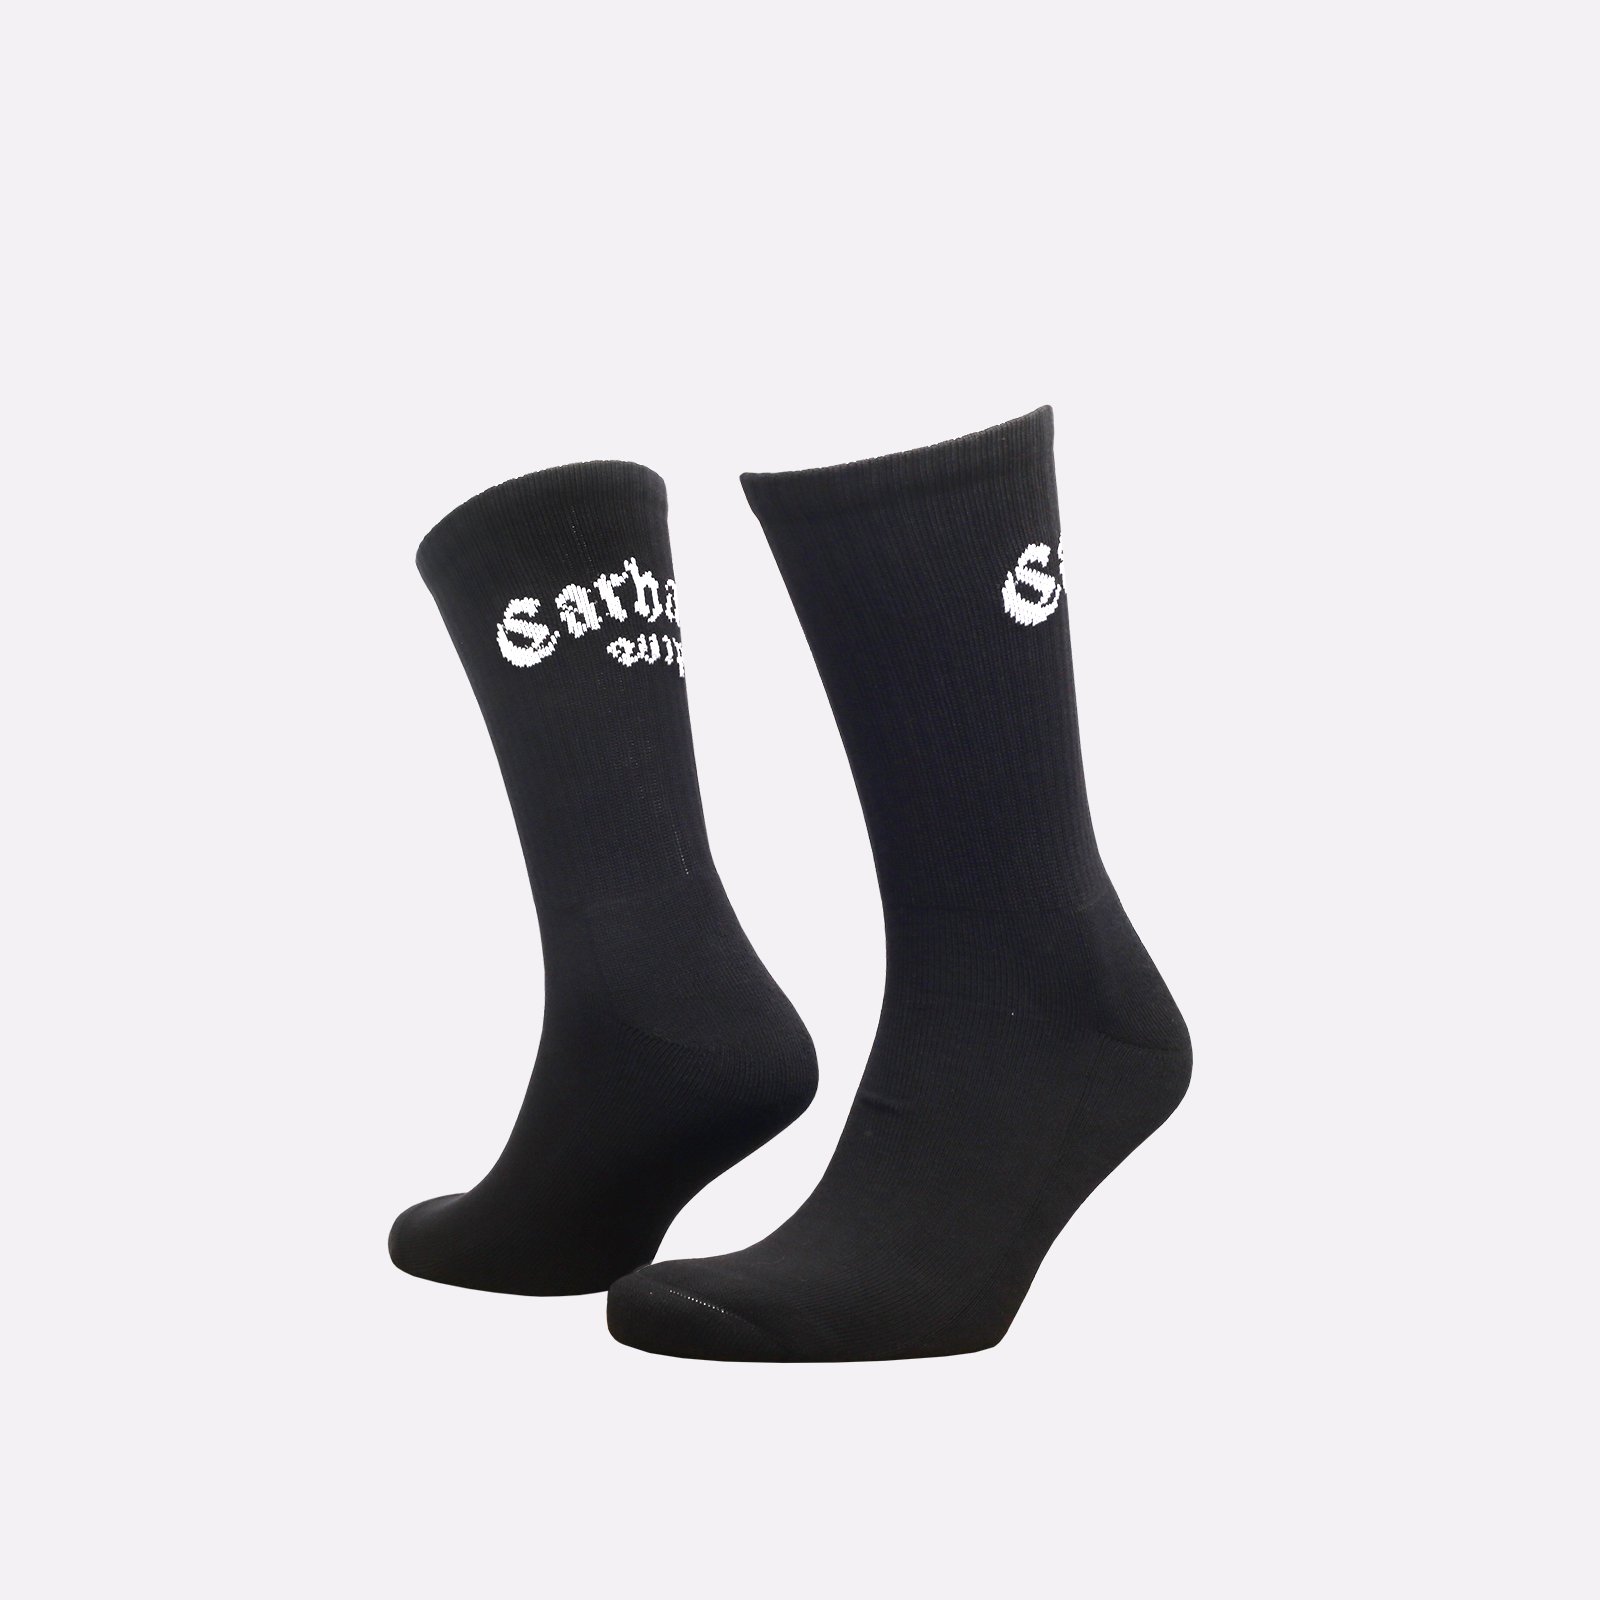 мужские носки Carhartt WIP Onyx Sox  (I032862-black/white)  - цена, описание, фото 1